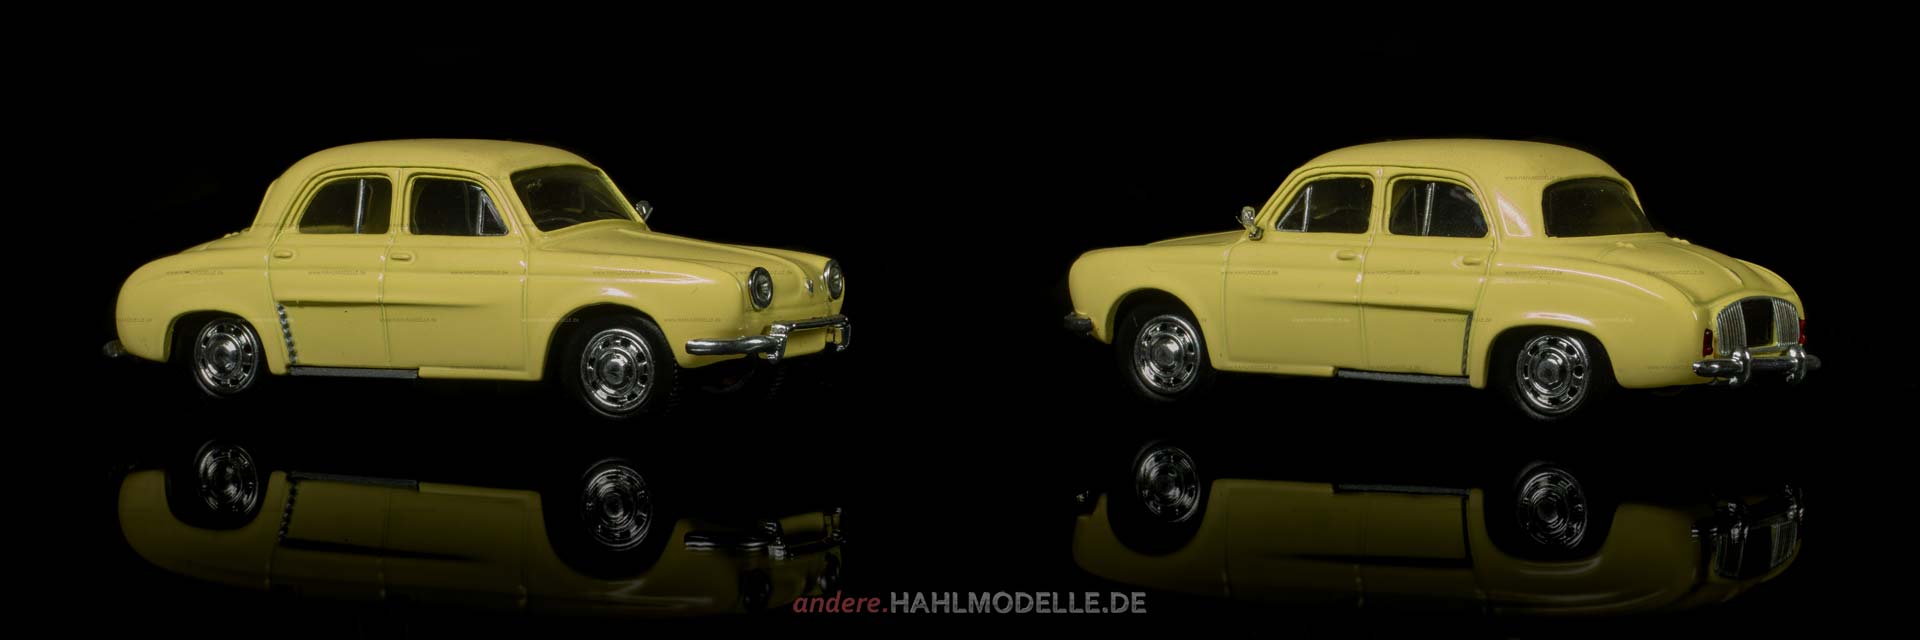 Renault Dauphine | Limousine | Ixo | 1:43 | www.andere.hahlmodelle.de